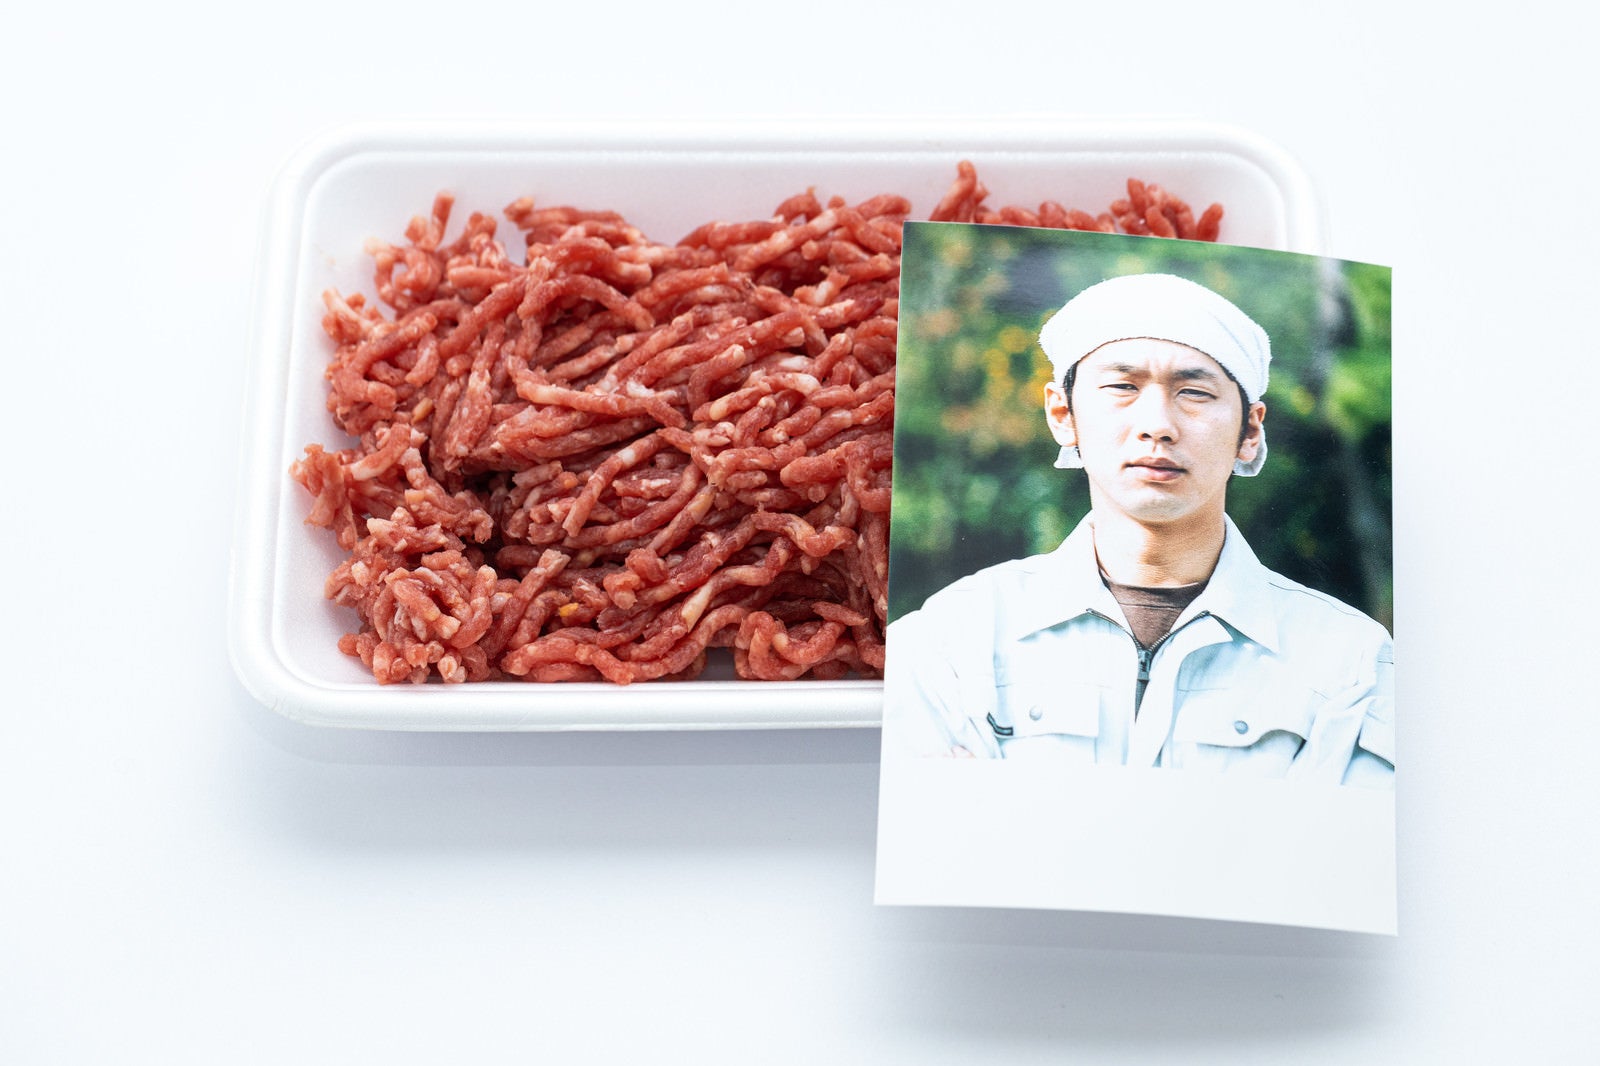 「ミンチ肉の食肉トレーと生産者さんの顔写真」の写真［モデル：大川竜弥］